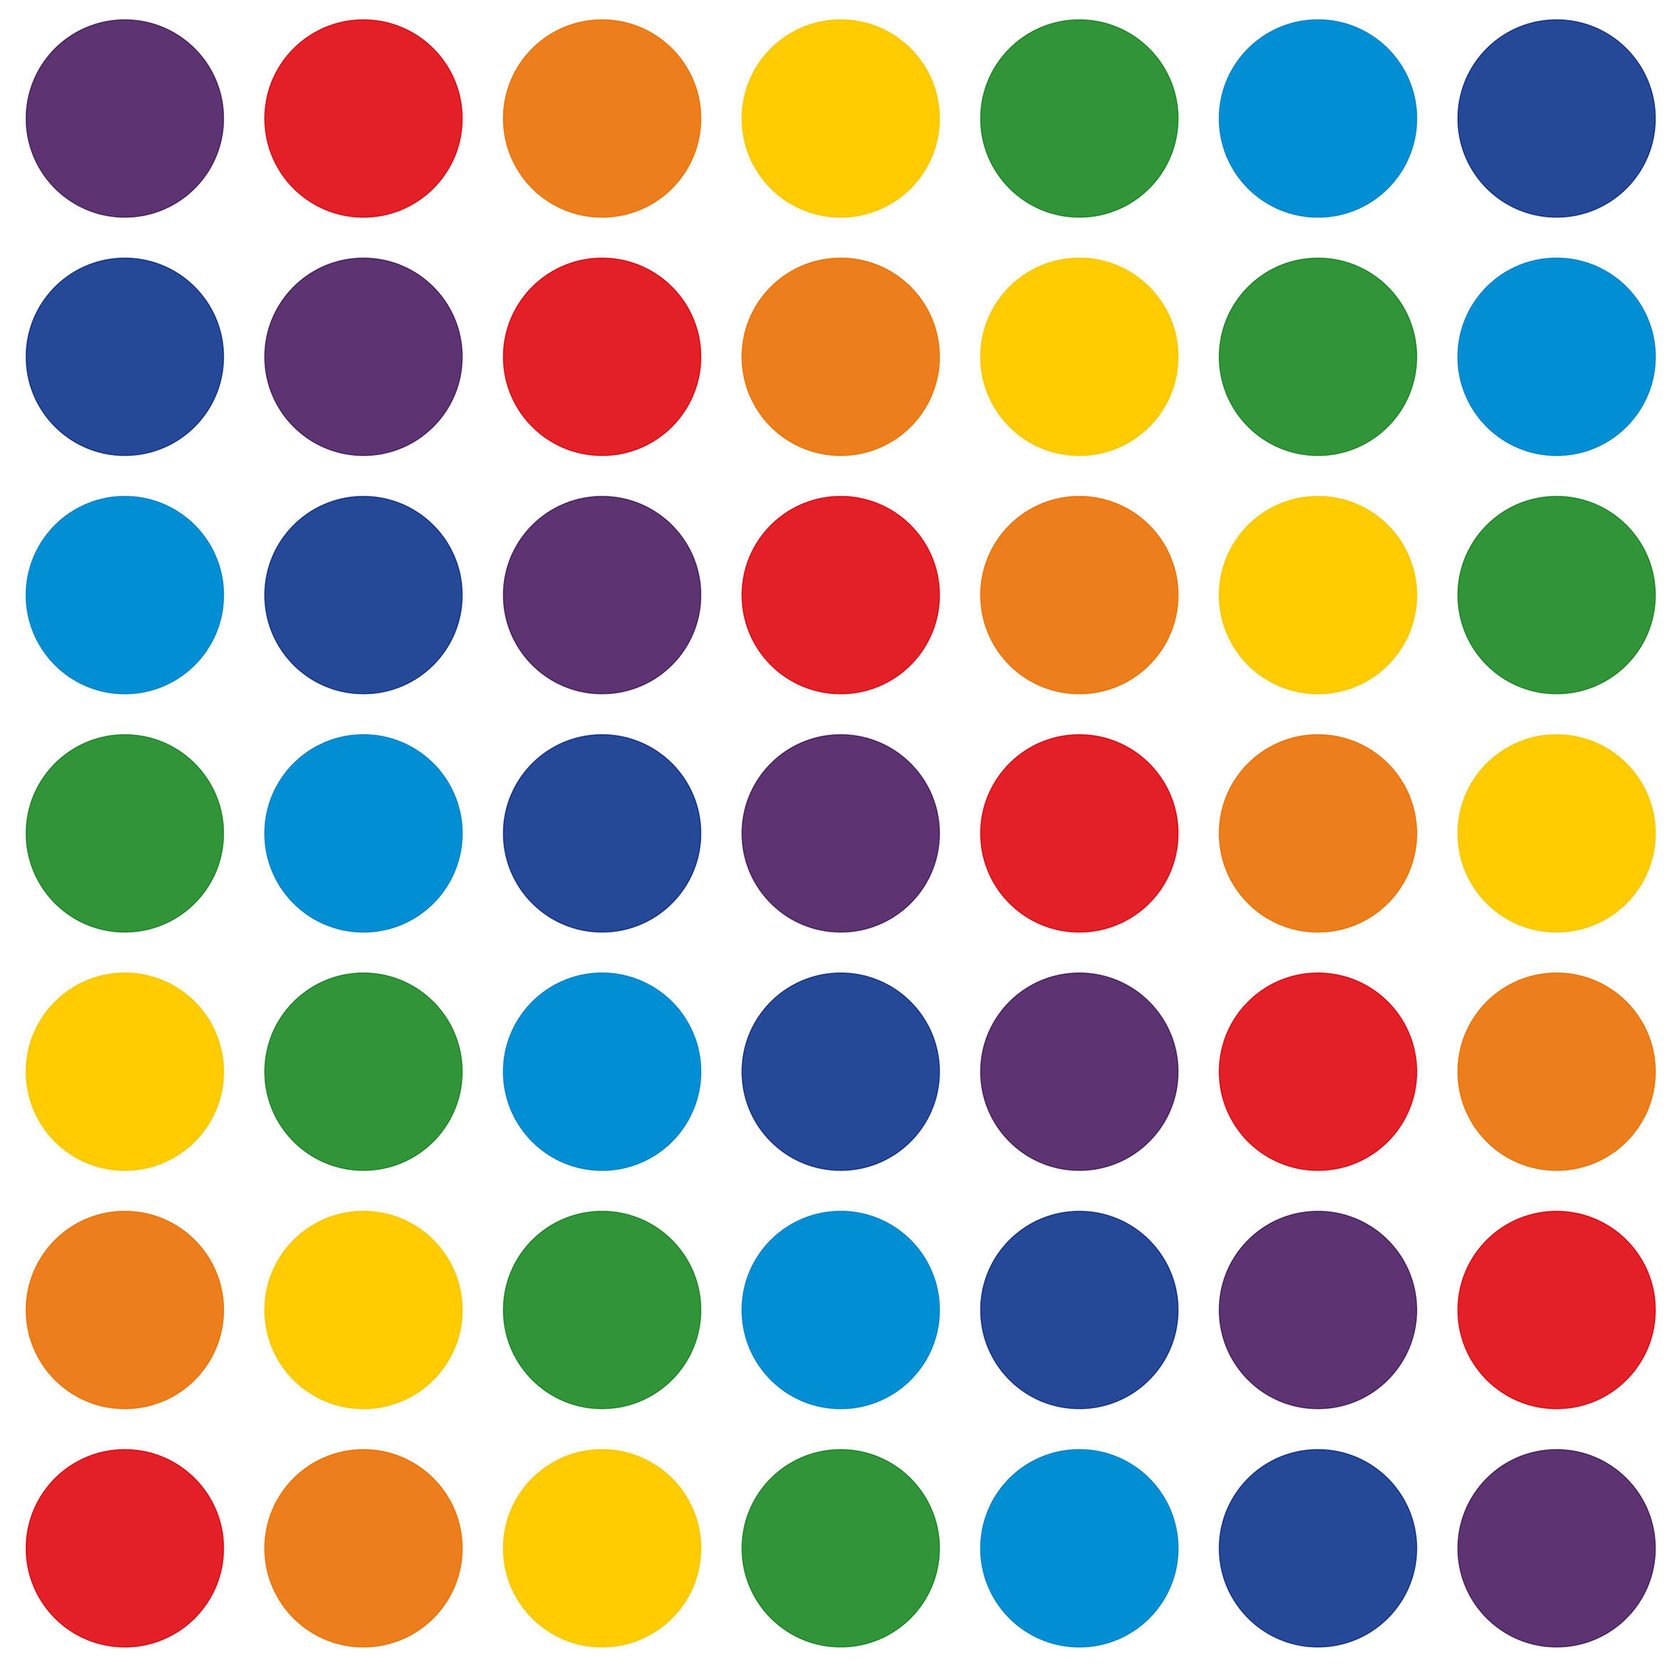 Много маленьких кружков. Цветной круг. Разноцветные круги. Кружочки разных цветов. Цветные кружочки.